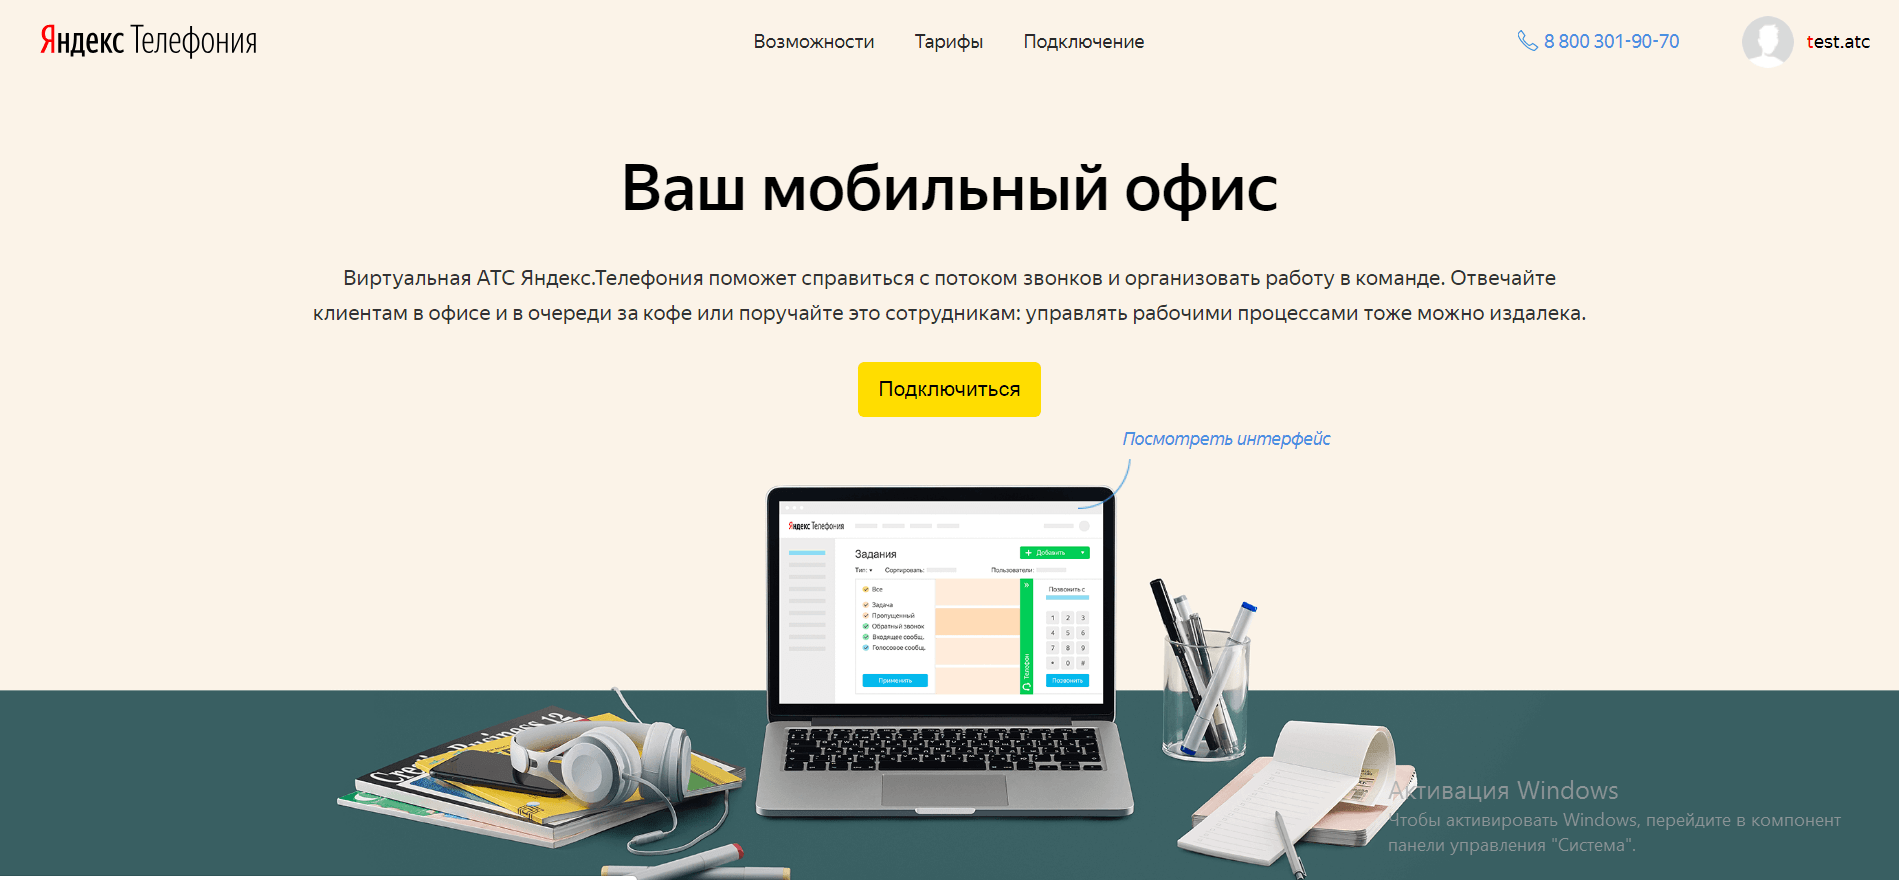 Начальная страница Яндекс телефонии